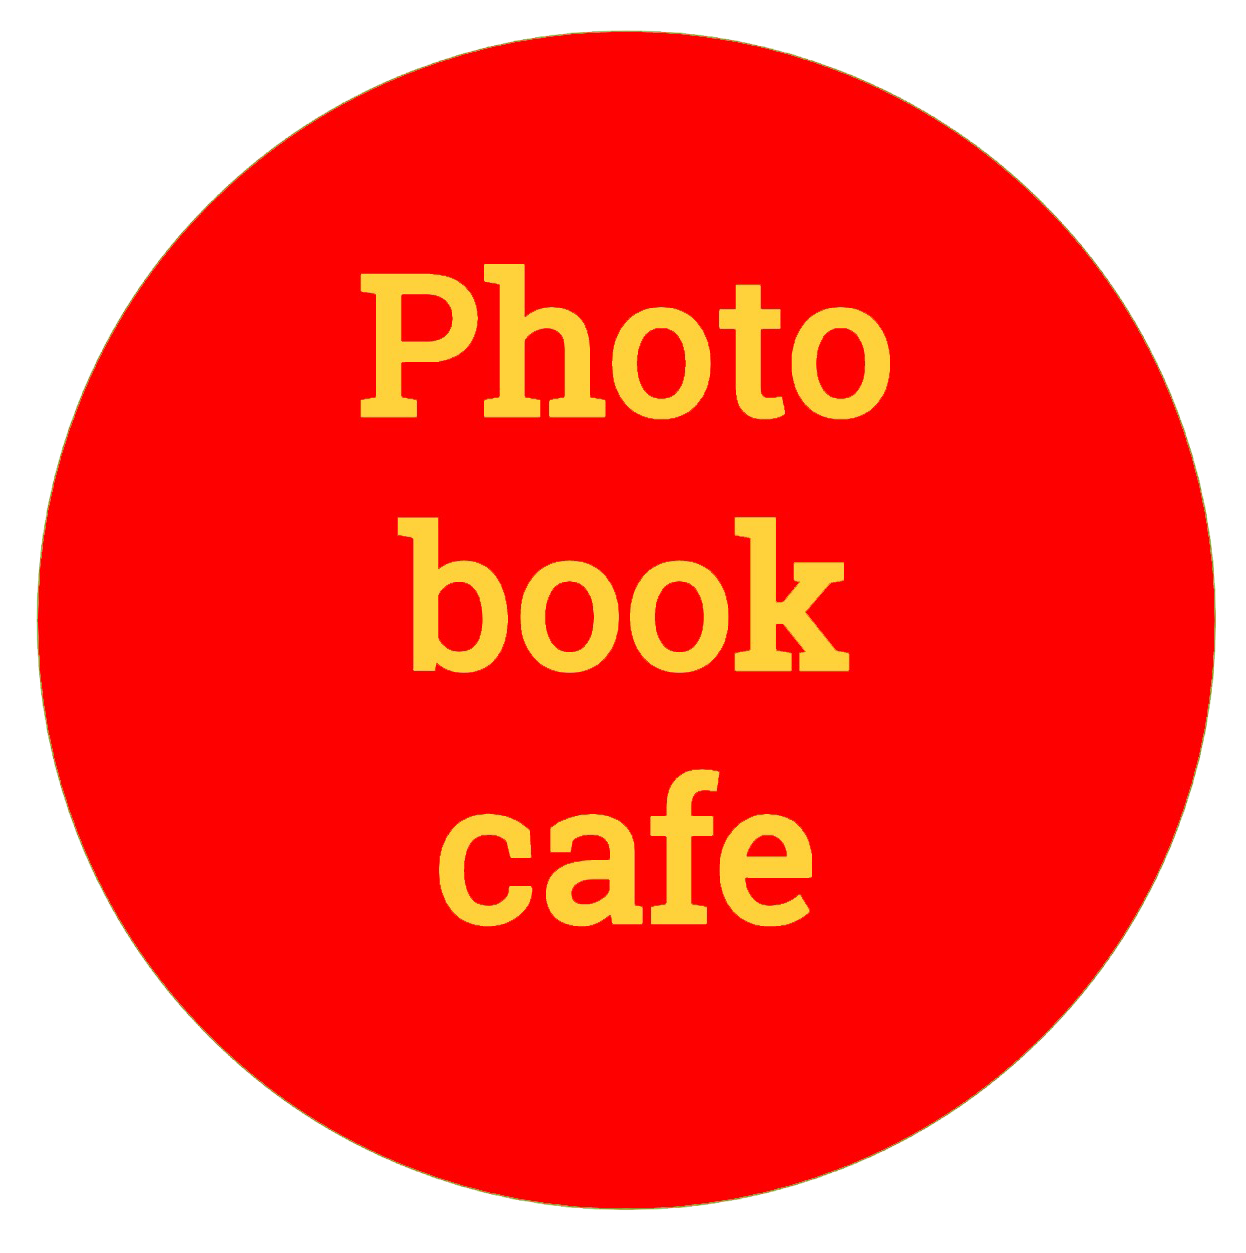 photobookcafe